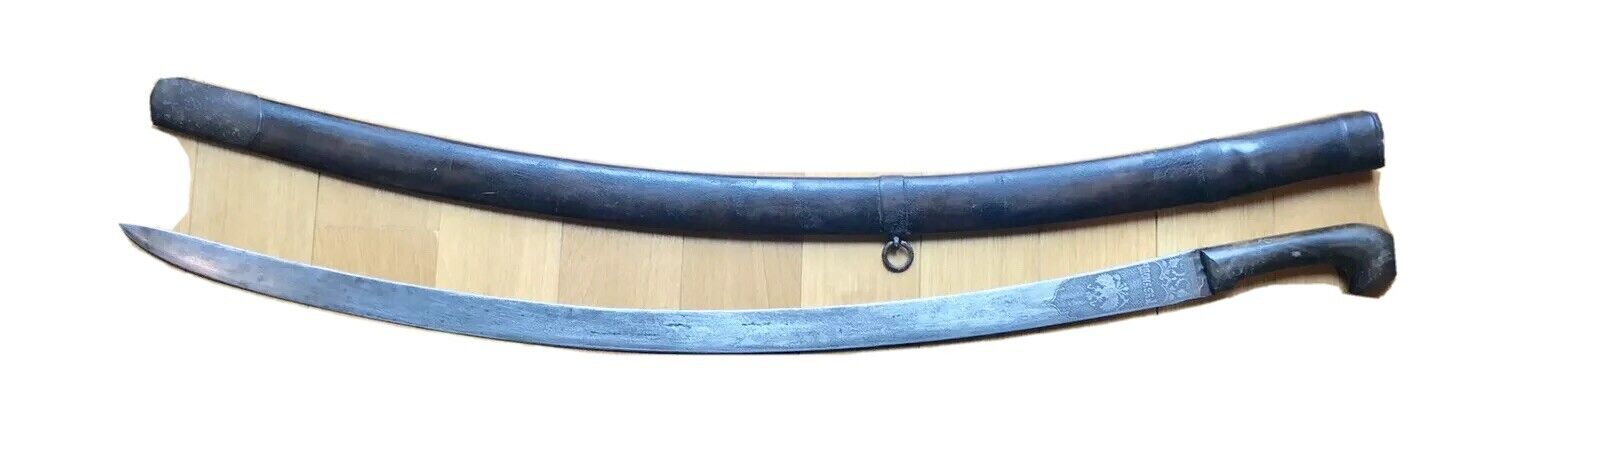 Vintage Antique Russian Caucasian Guzunov Horn Shashka Dagger Sword Scabbard Old